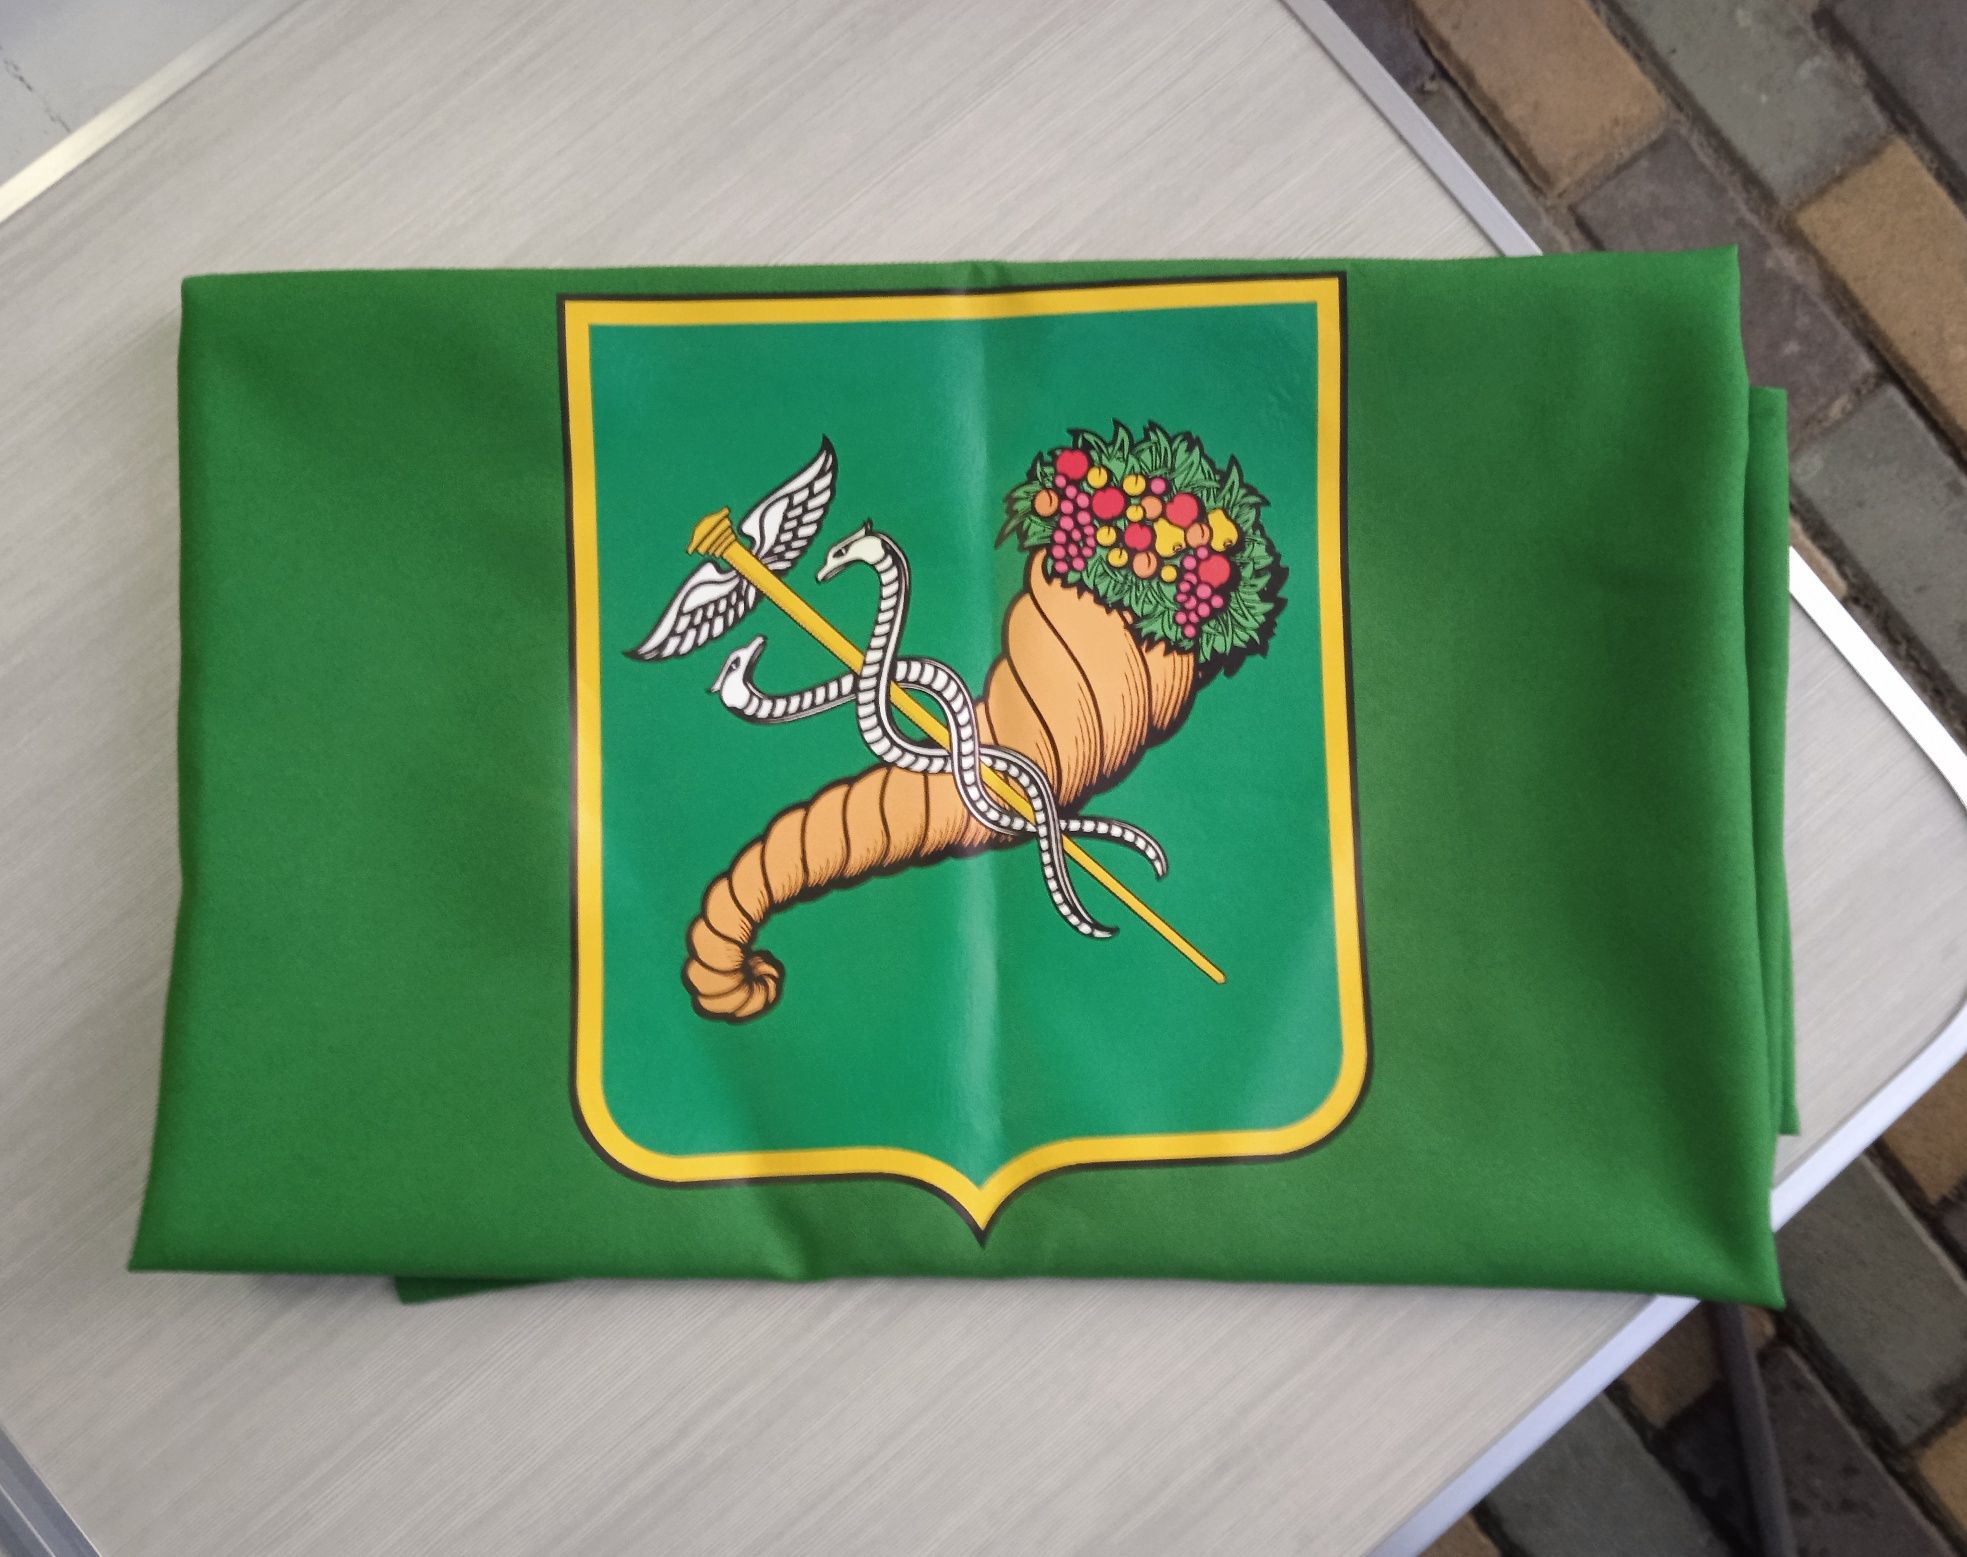 Прапор Харкова Флаг Харькова герб стяг